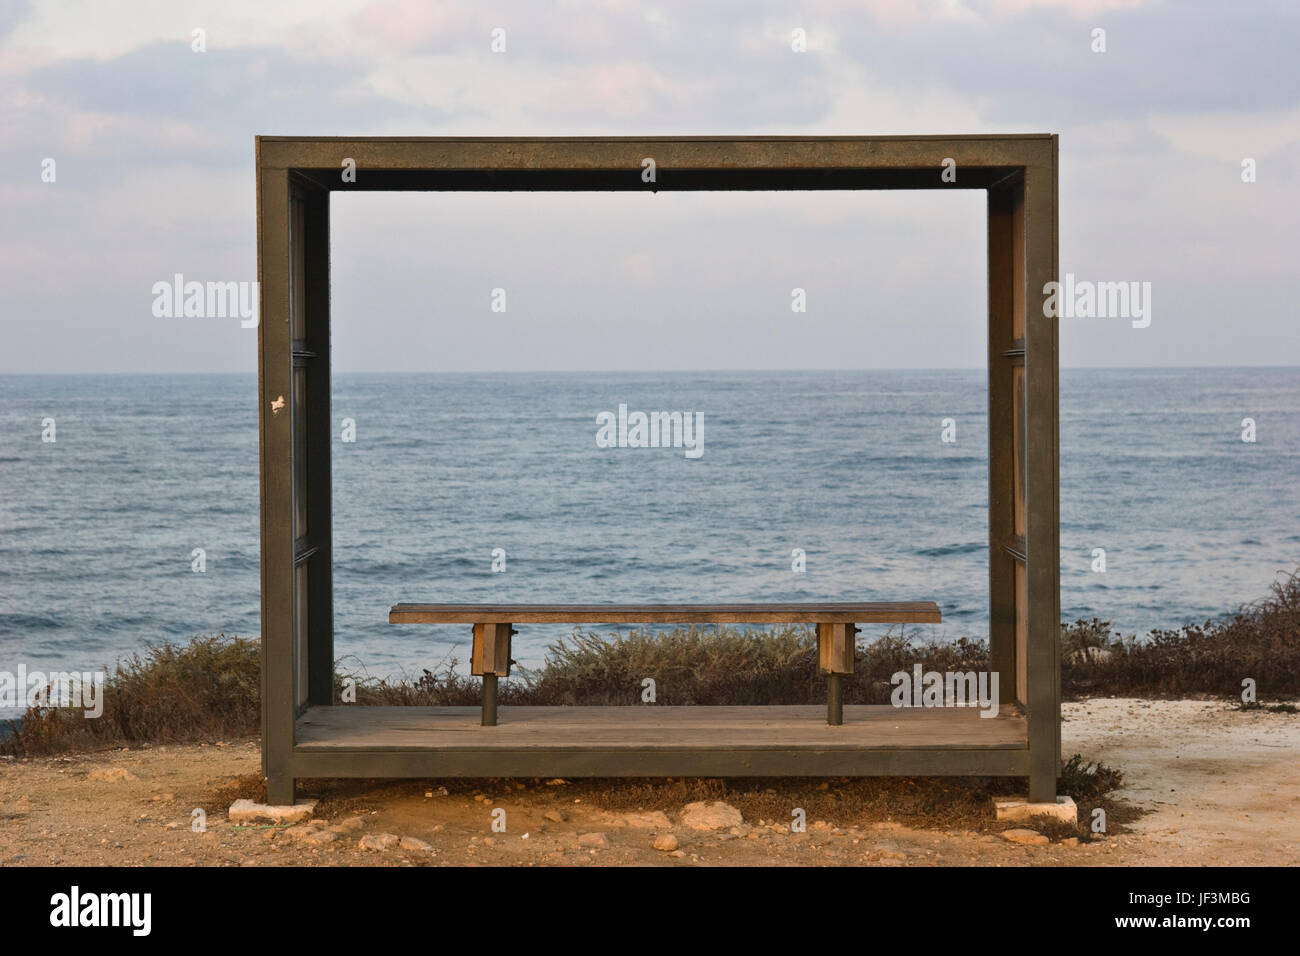 Banc avec vue sur la mer dans la région de Paphos, Chypre Banque D'Images